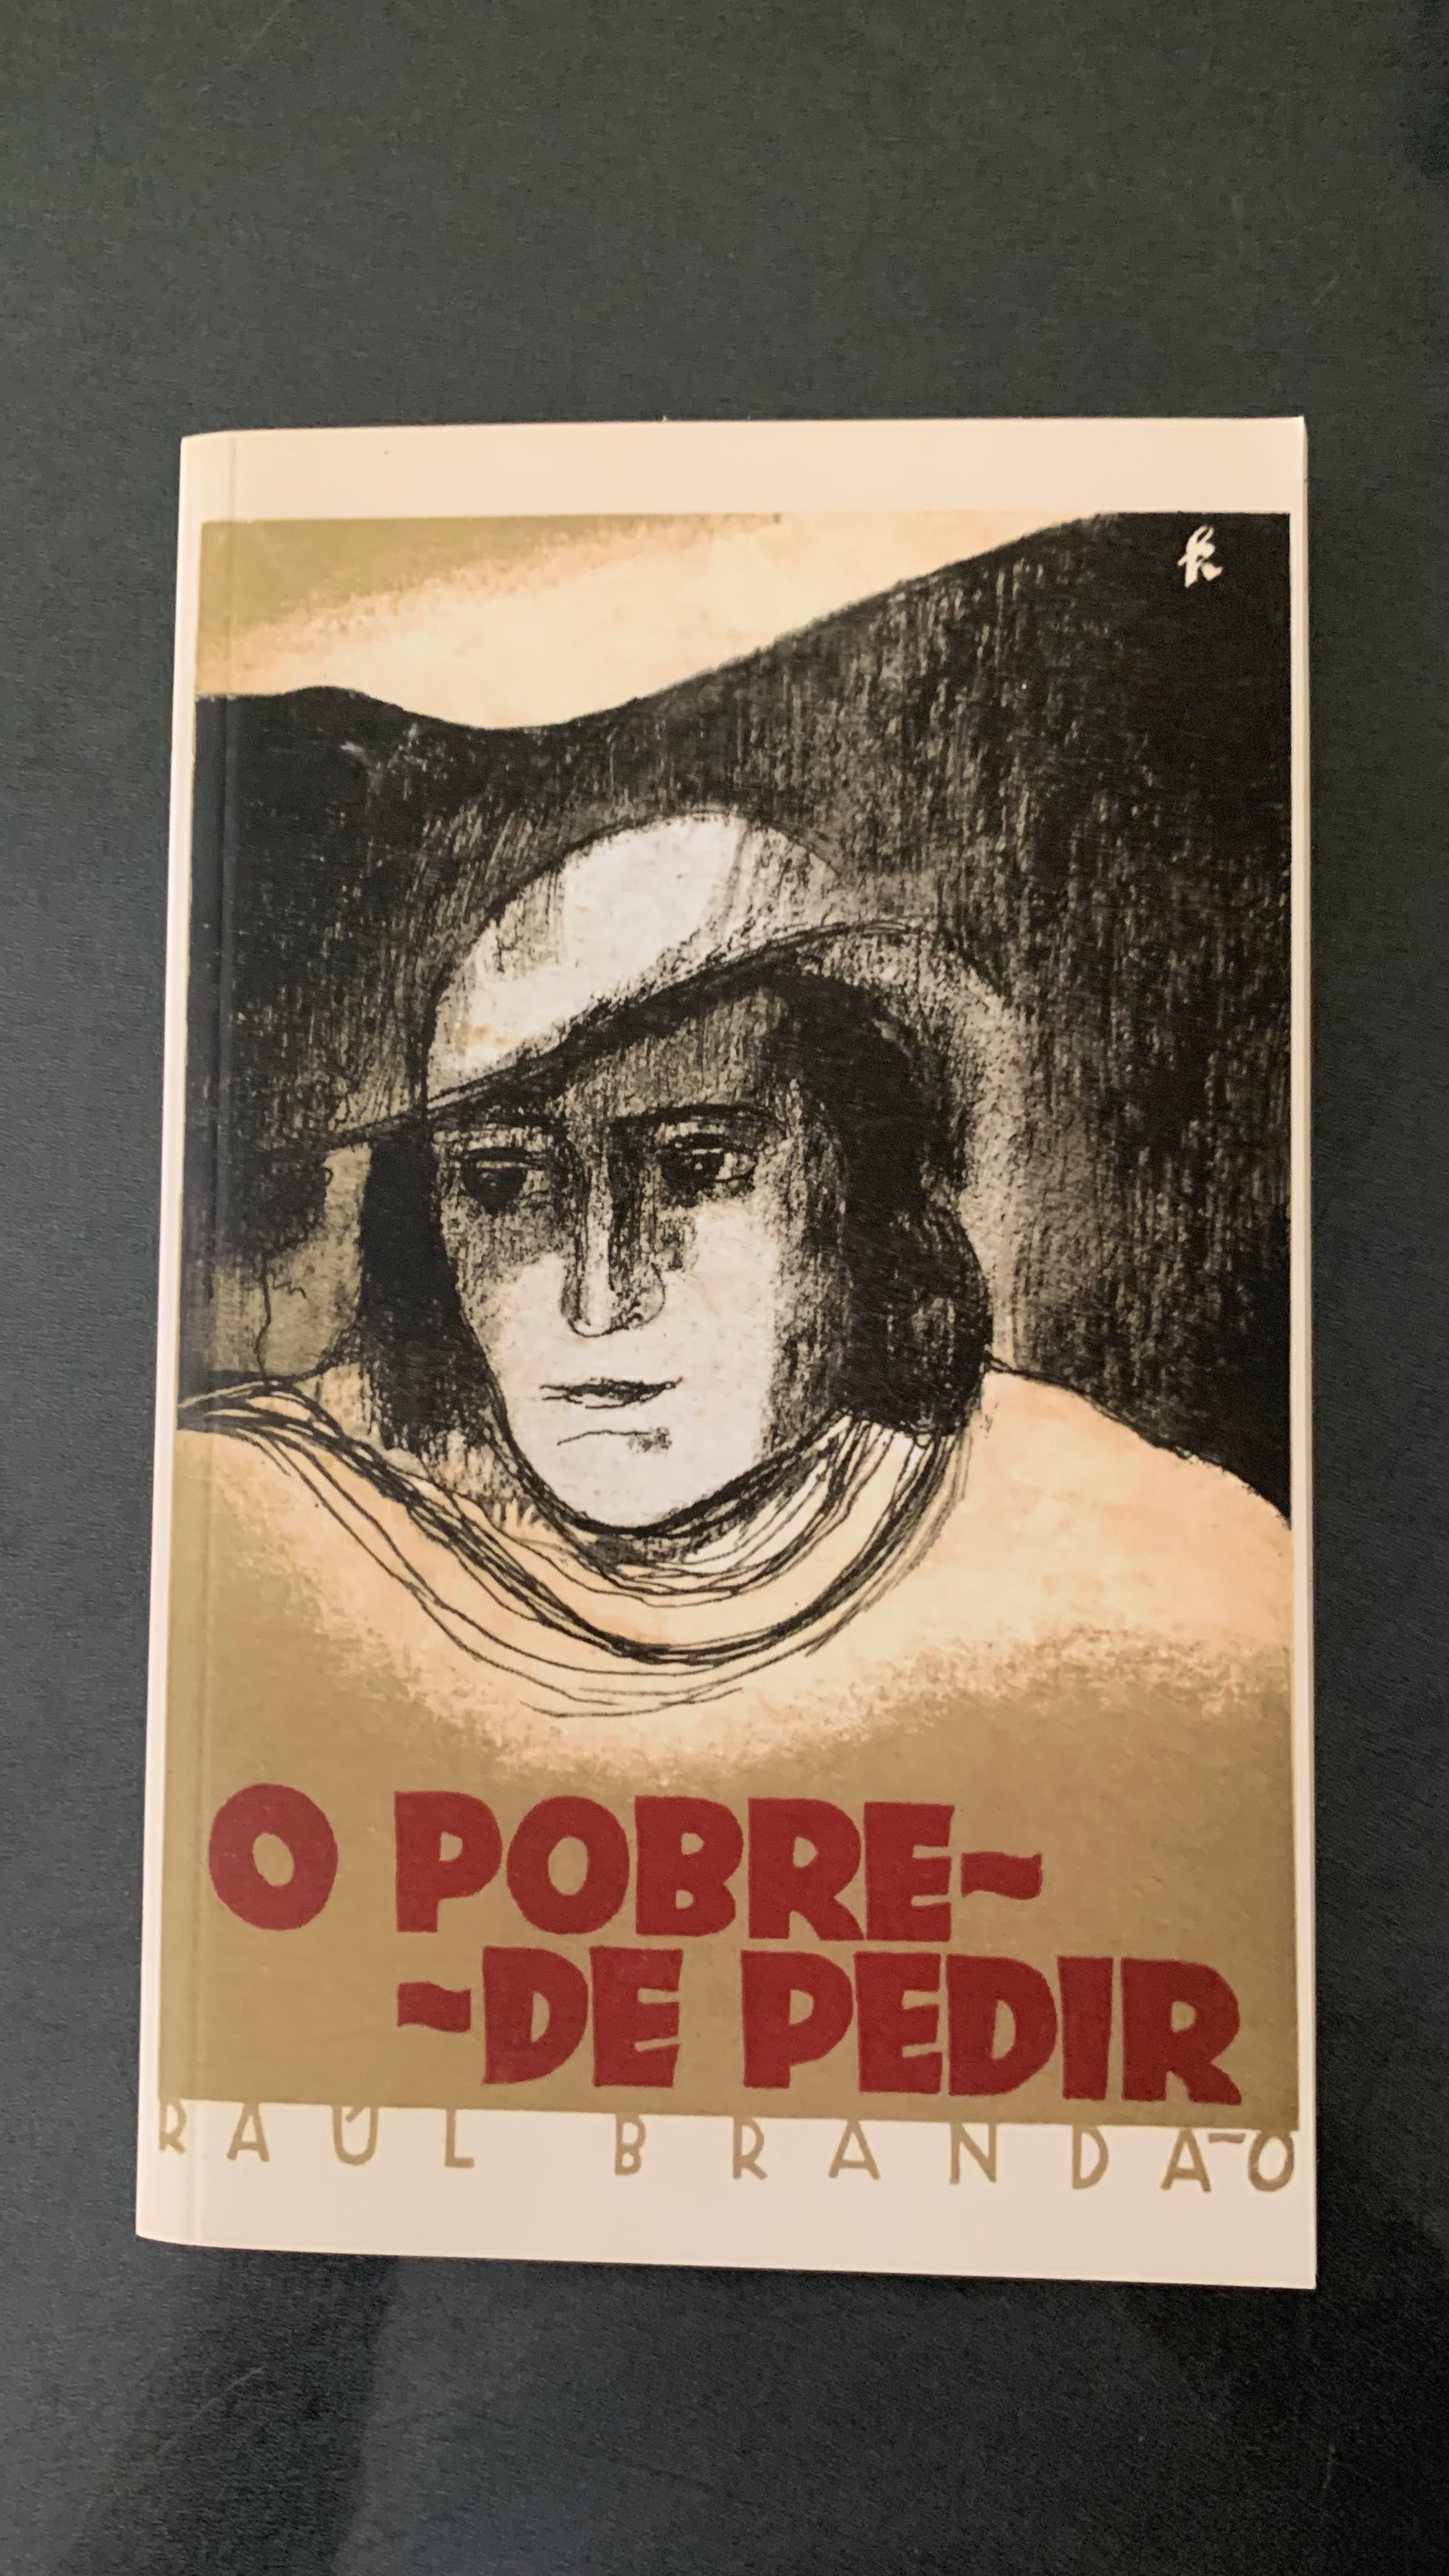 Livro “O pobre de pedir” de Raúl Brandão